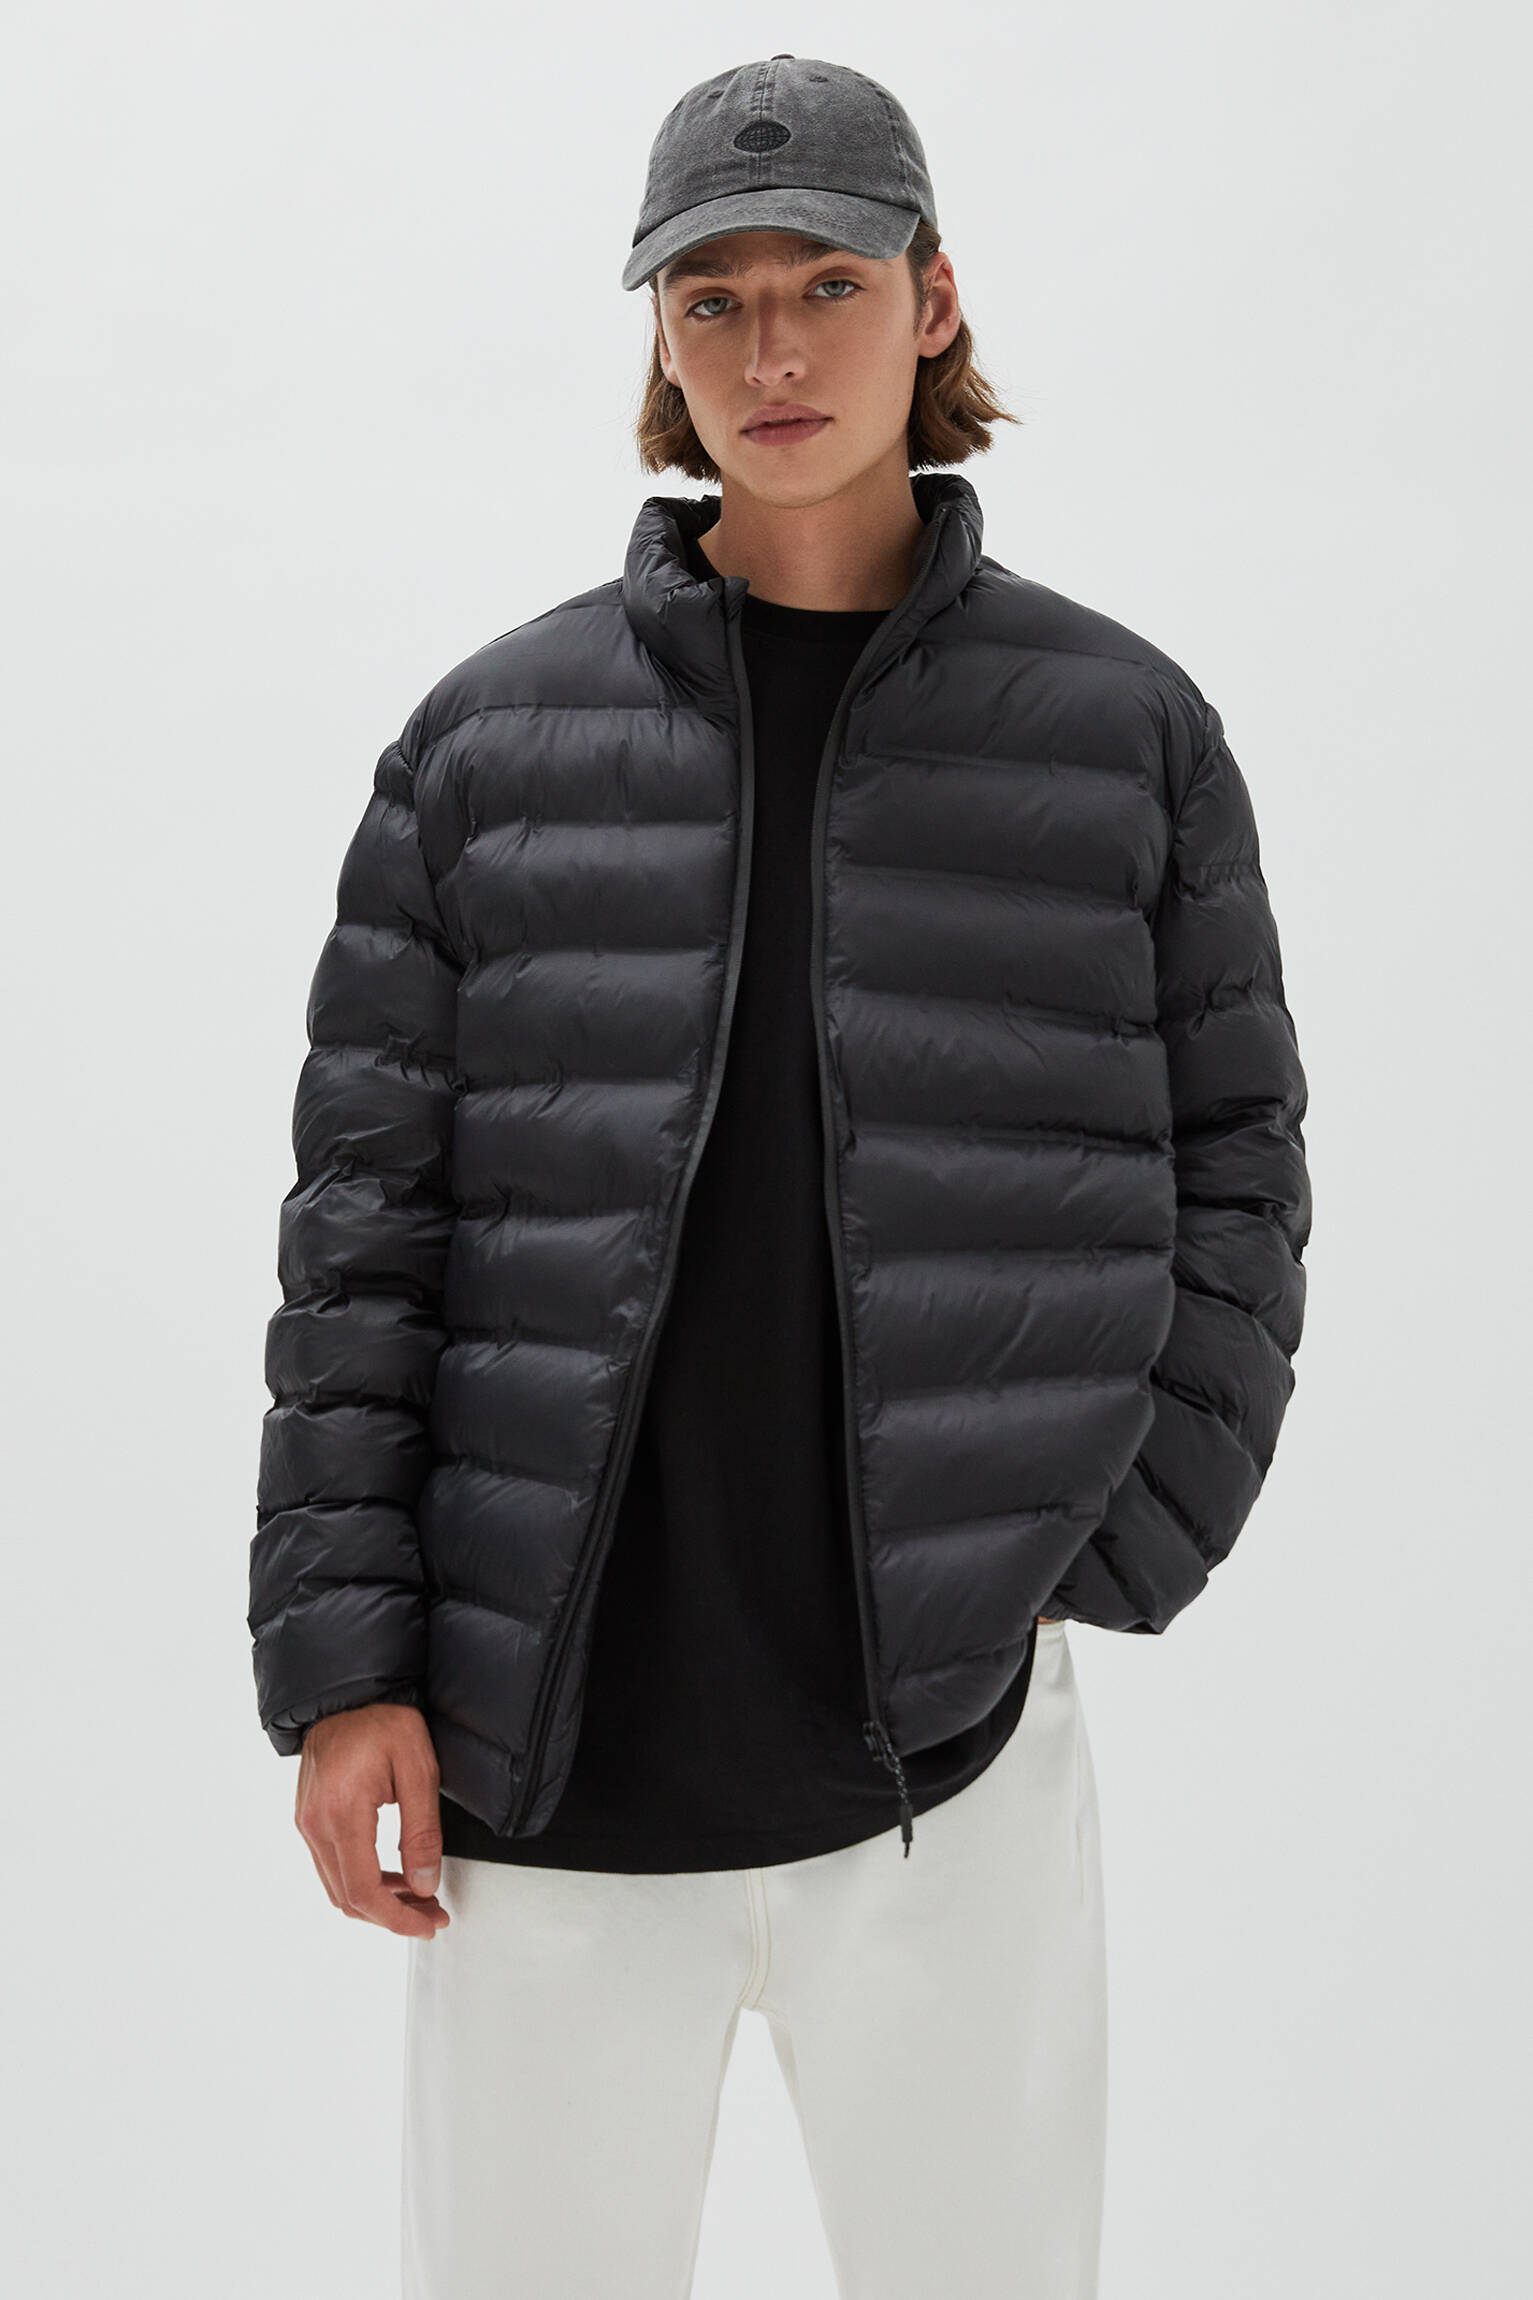 Pull & Bear - Lightweight puffer jacket with zip